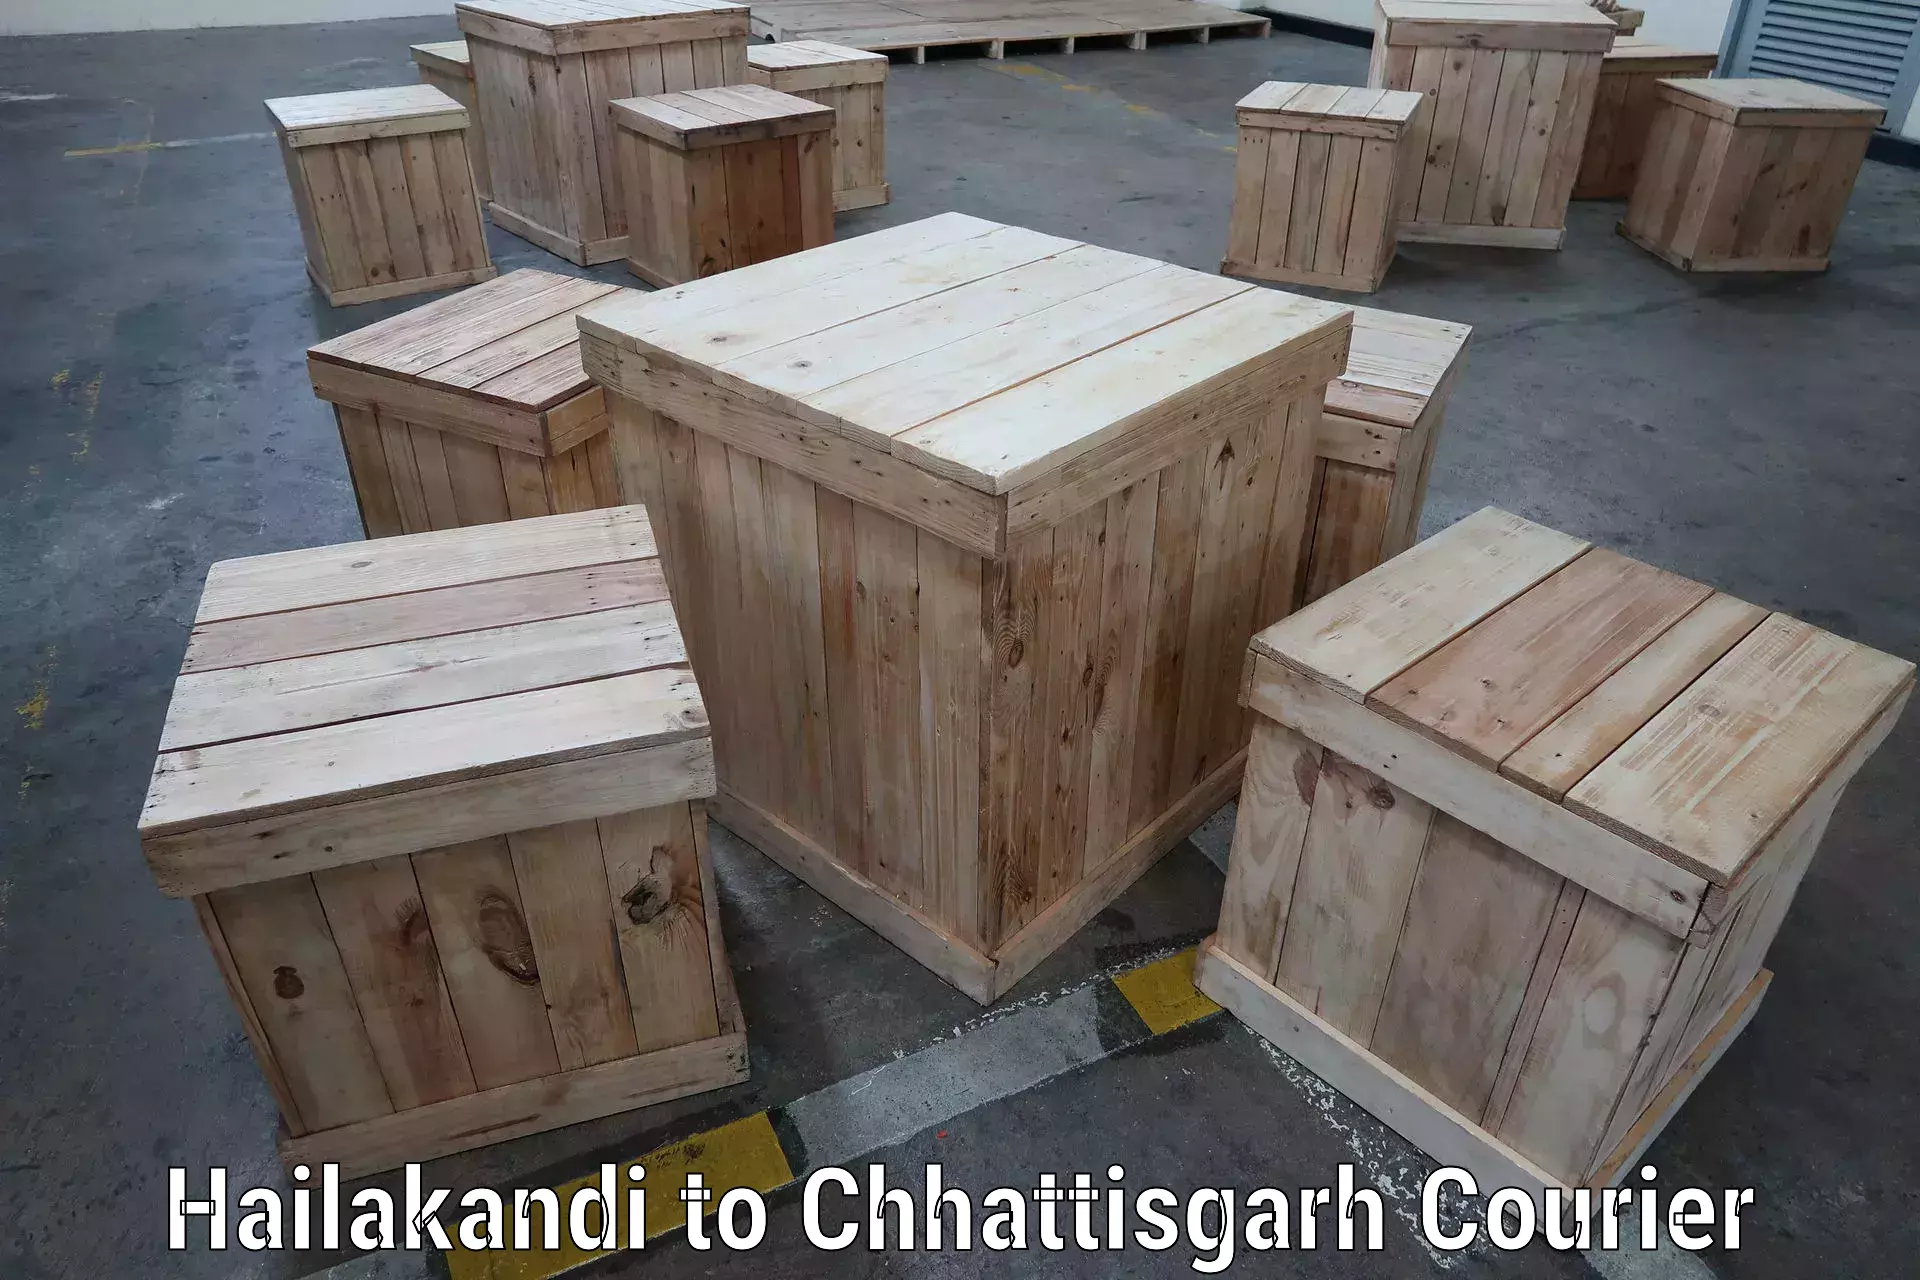 24-hour courier service Hailakandi to Raigarh Chhattisgarh